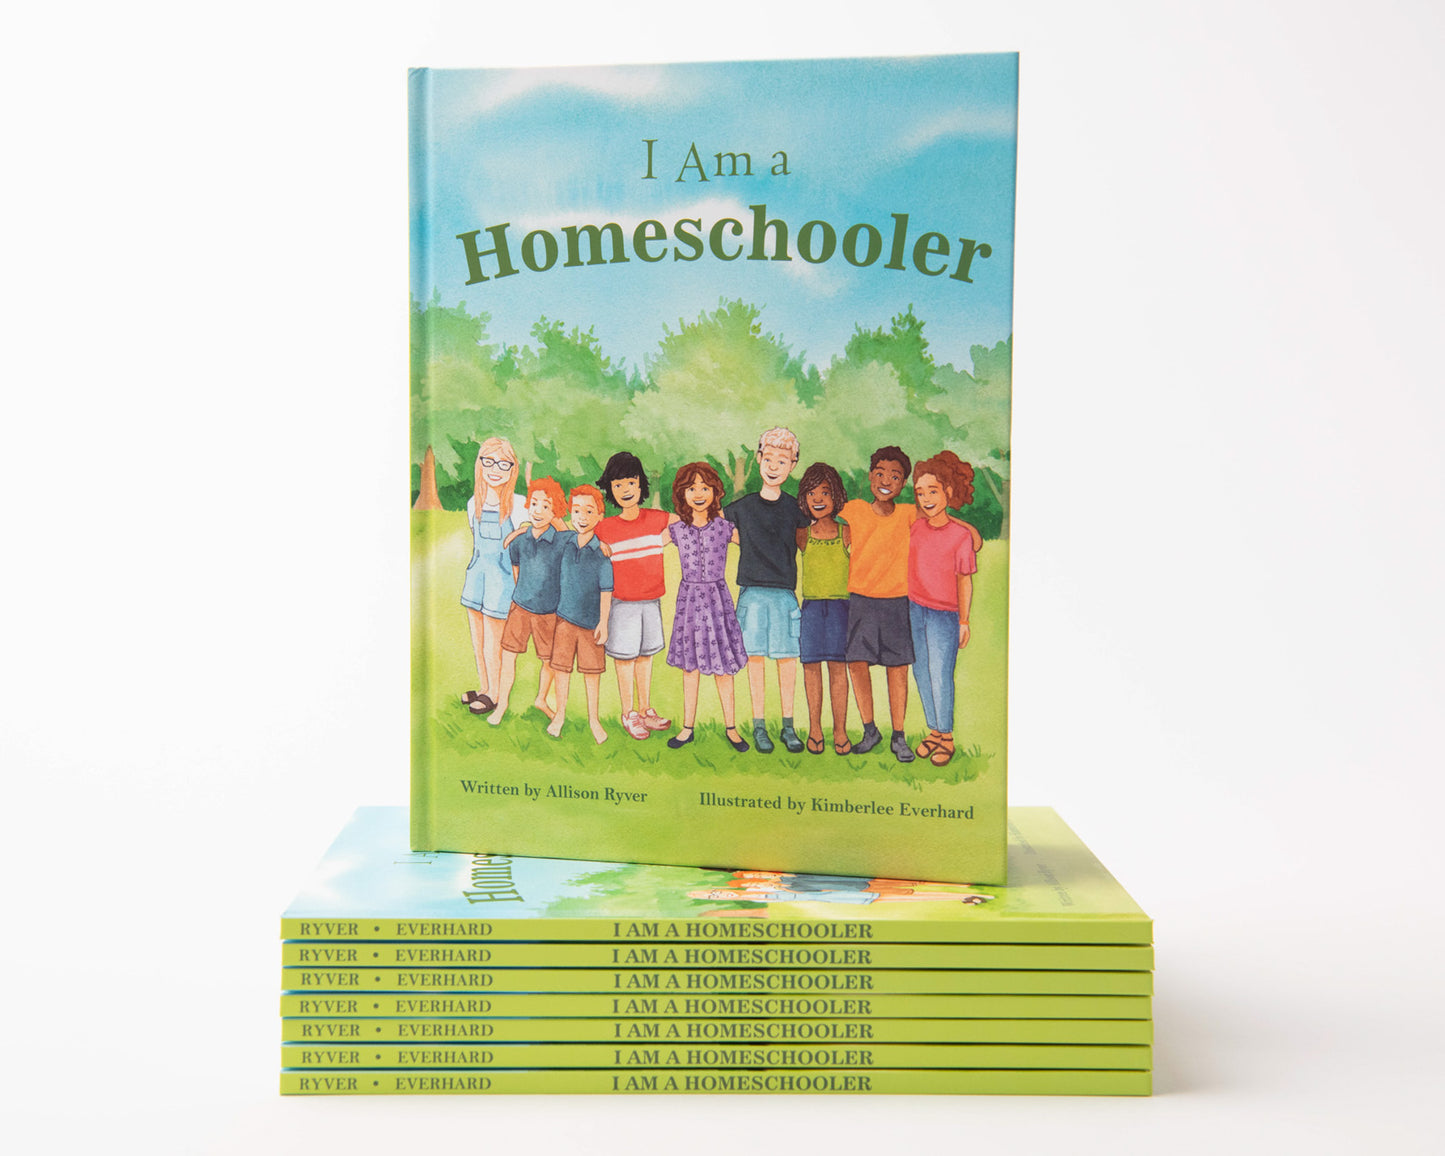 Homeschool kids books, Children's book about homeschooling, Books about homeschoolers, Books about Homeschool, Books about Homeschooling, I Am a Homeschooler Children's Book